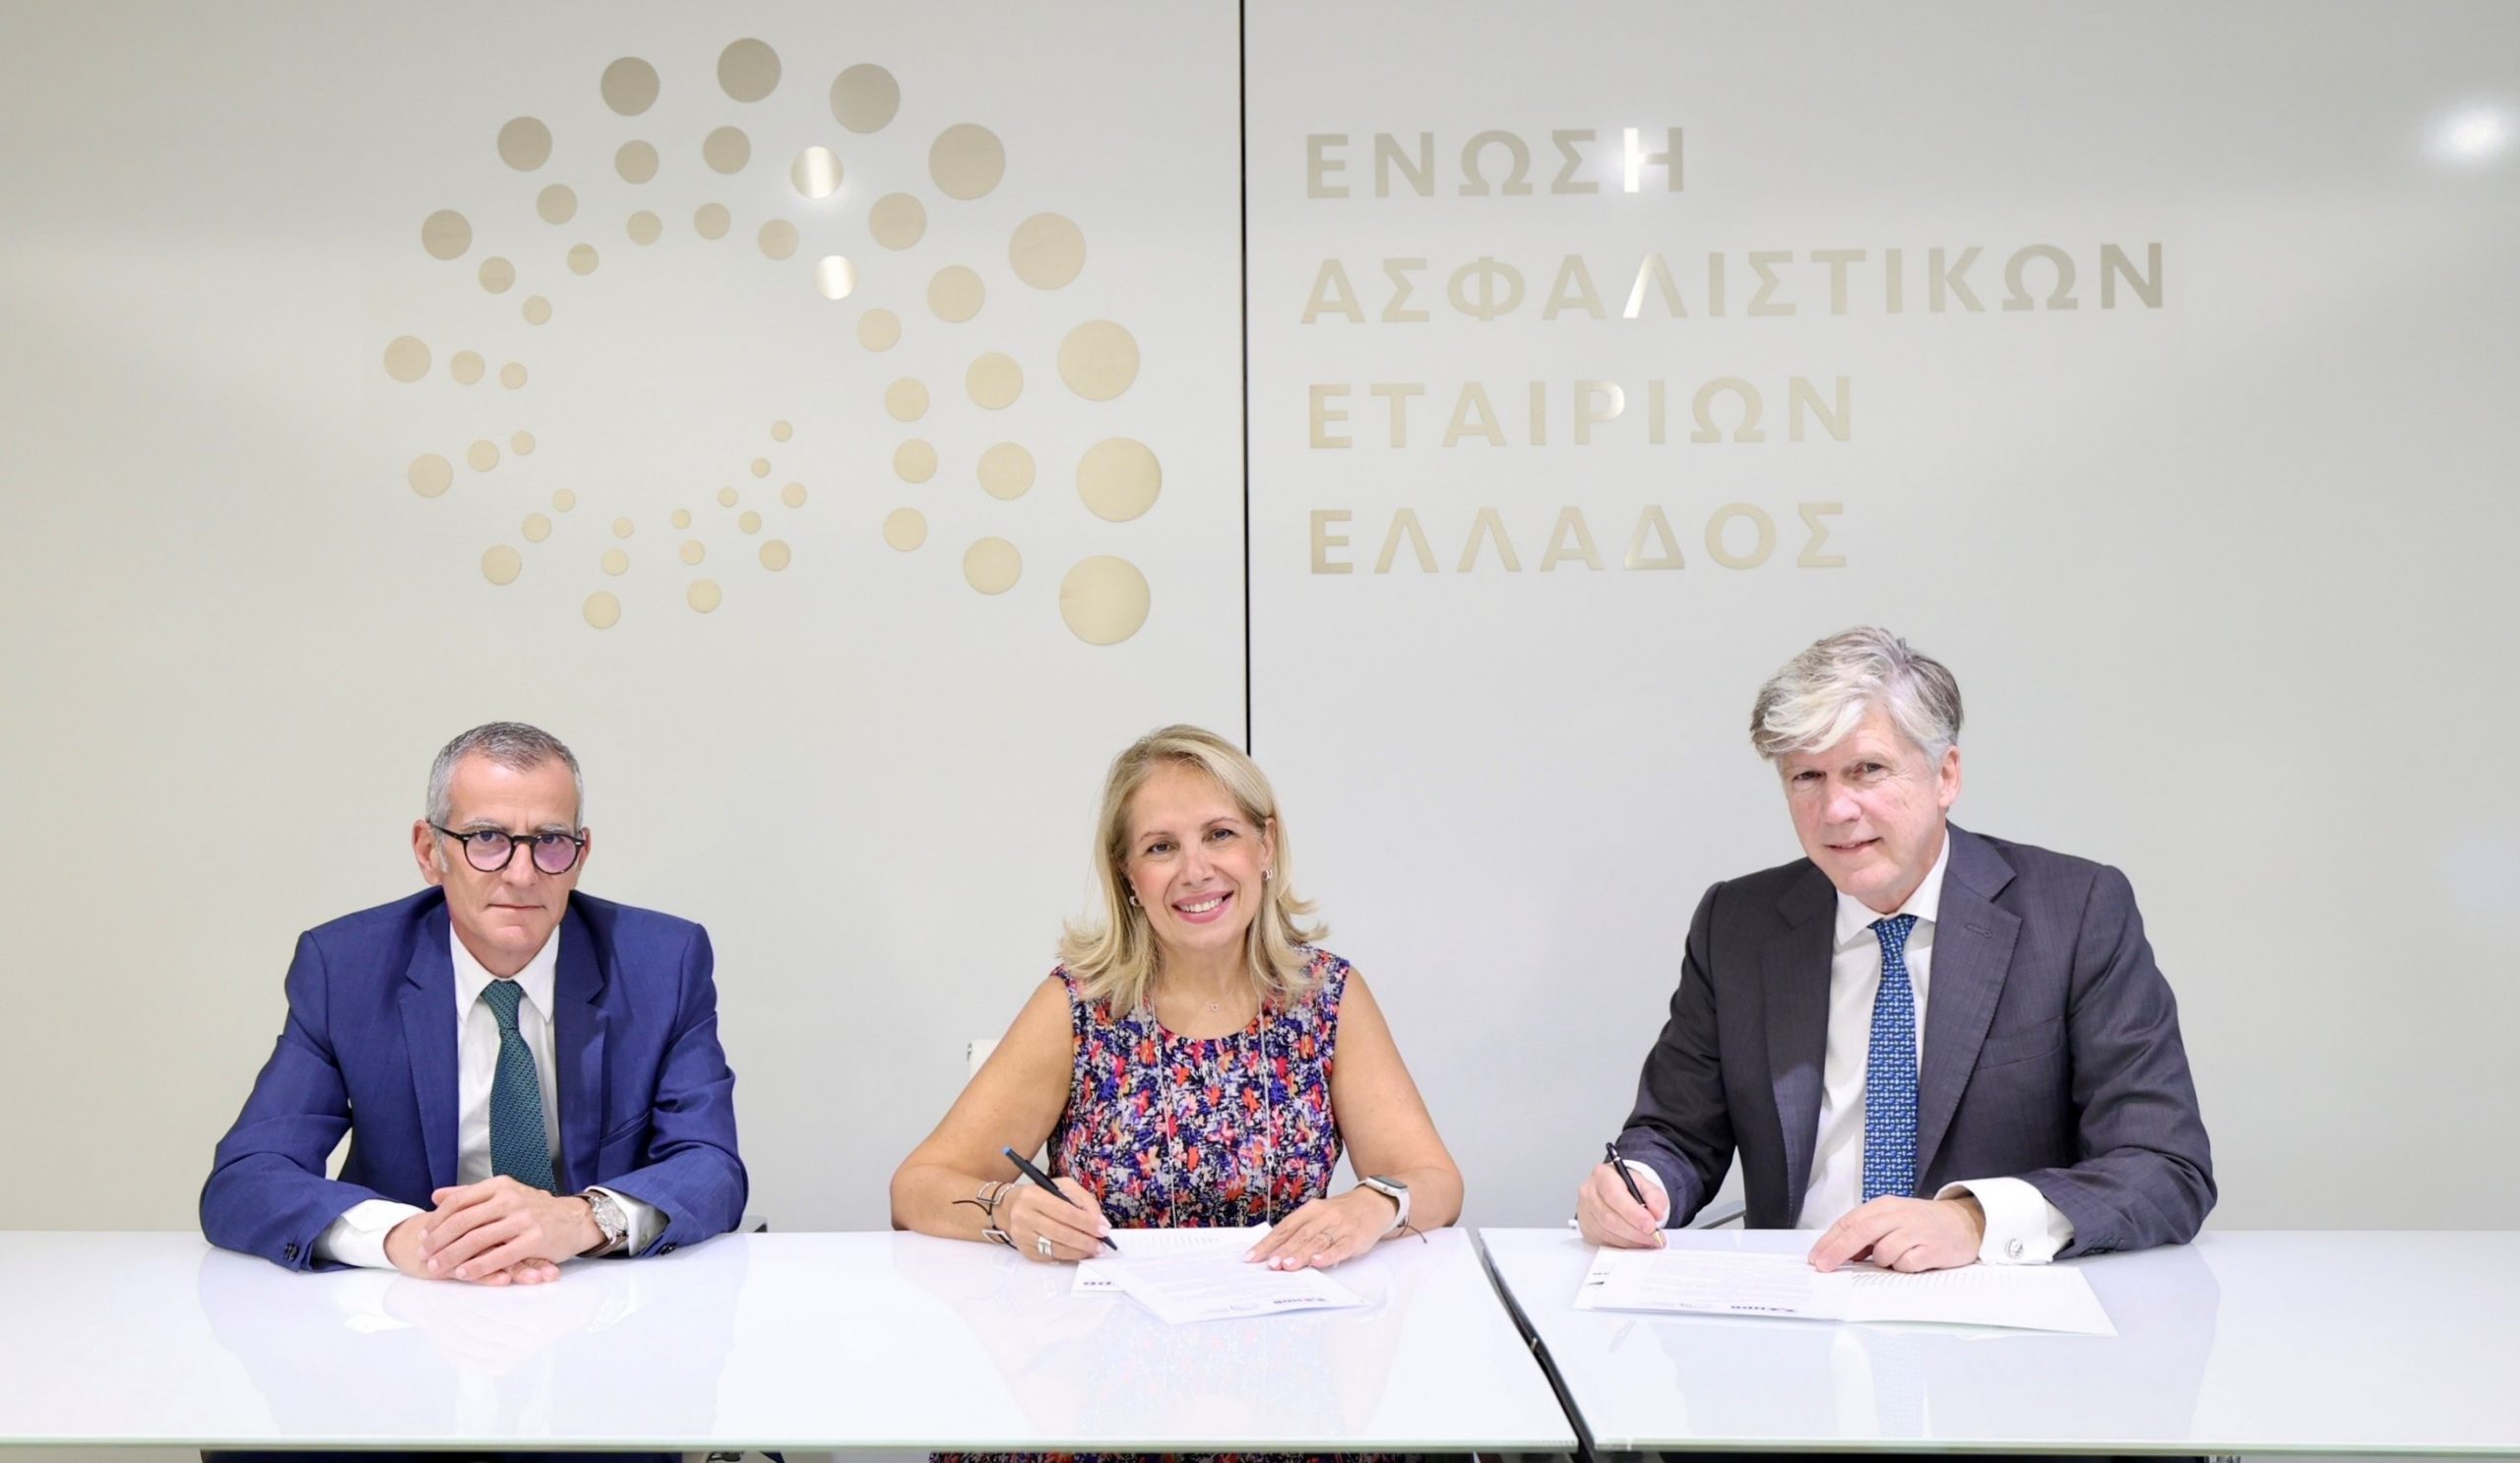 Ελληνική Αναπτυξιακή Τράπεζα: Μνημόνιο συνεργασίας με την Ένωση Ασφαλιστικών Εταιριών Ελλάδος